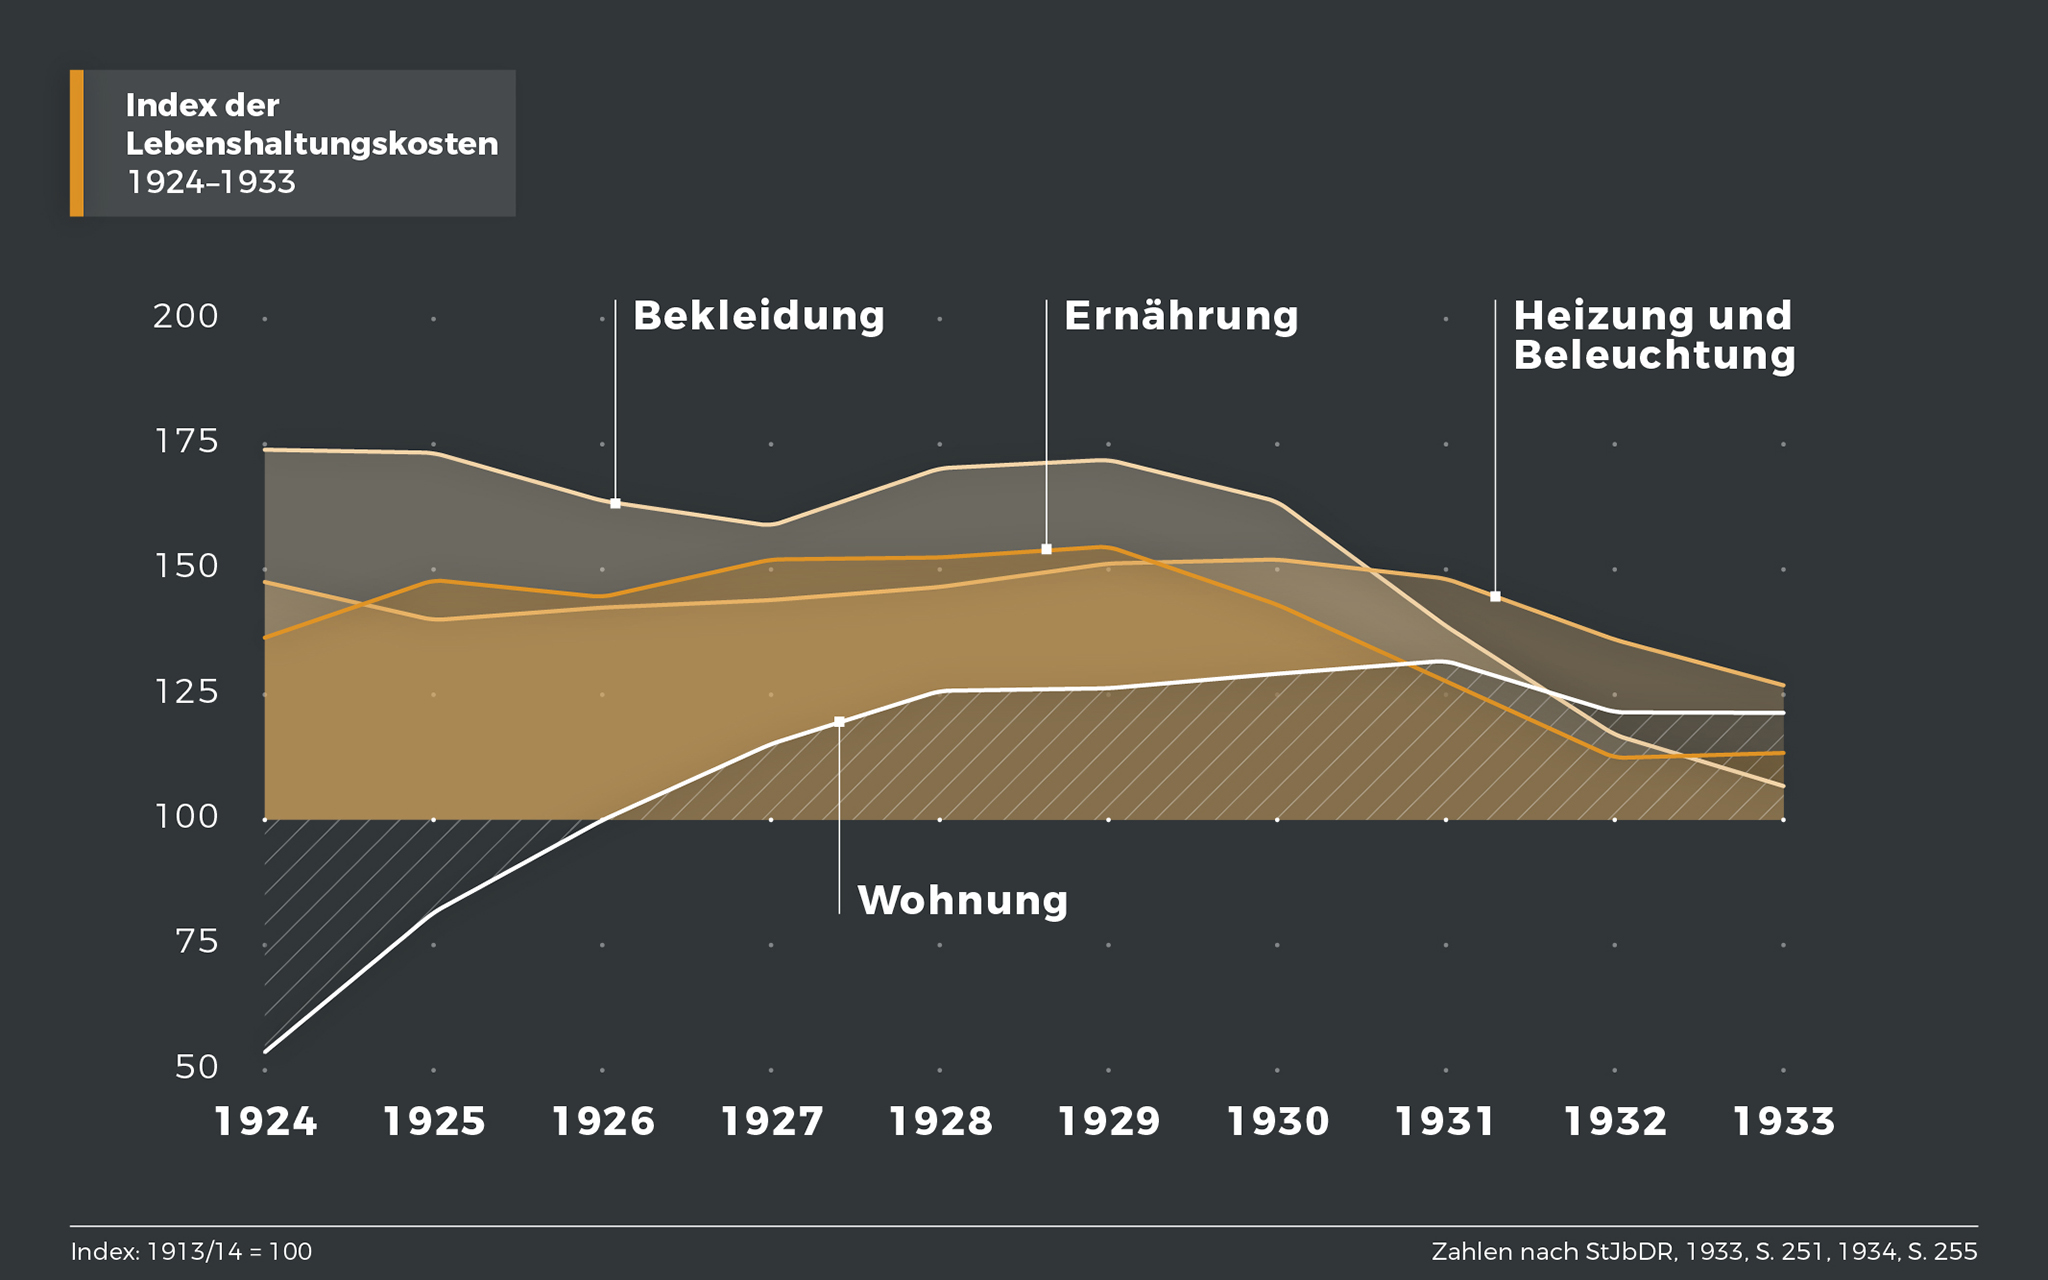 Index der Lebenshaltungskosten 1924-1933